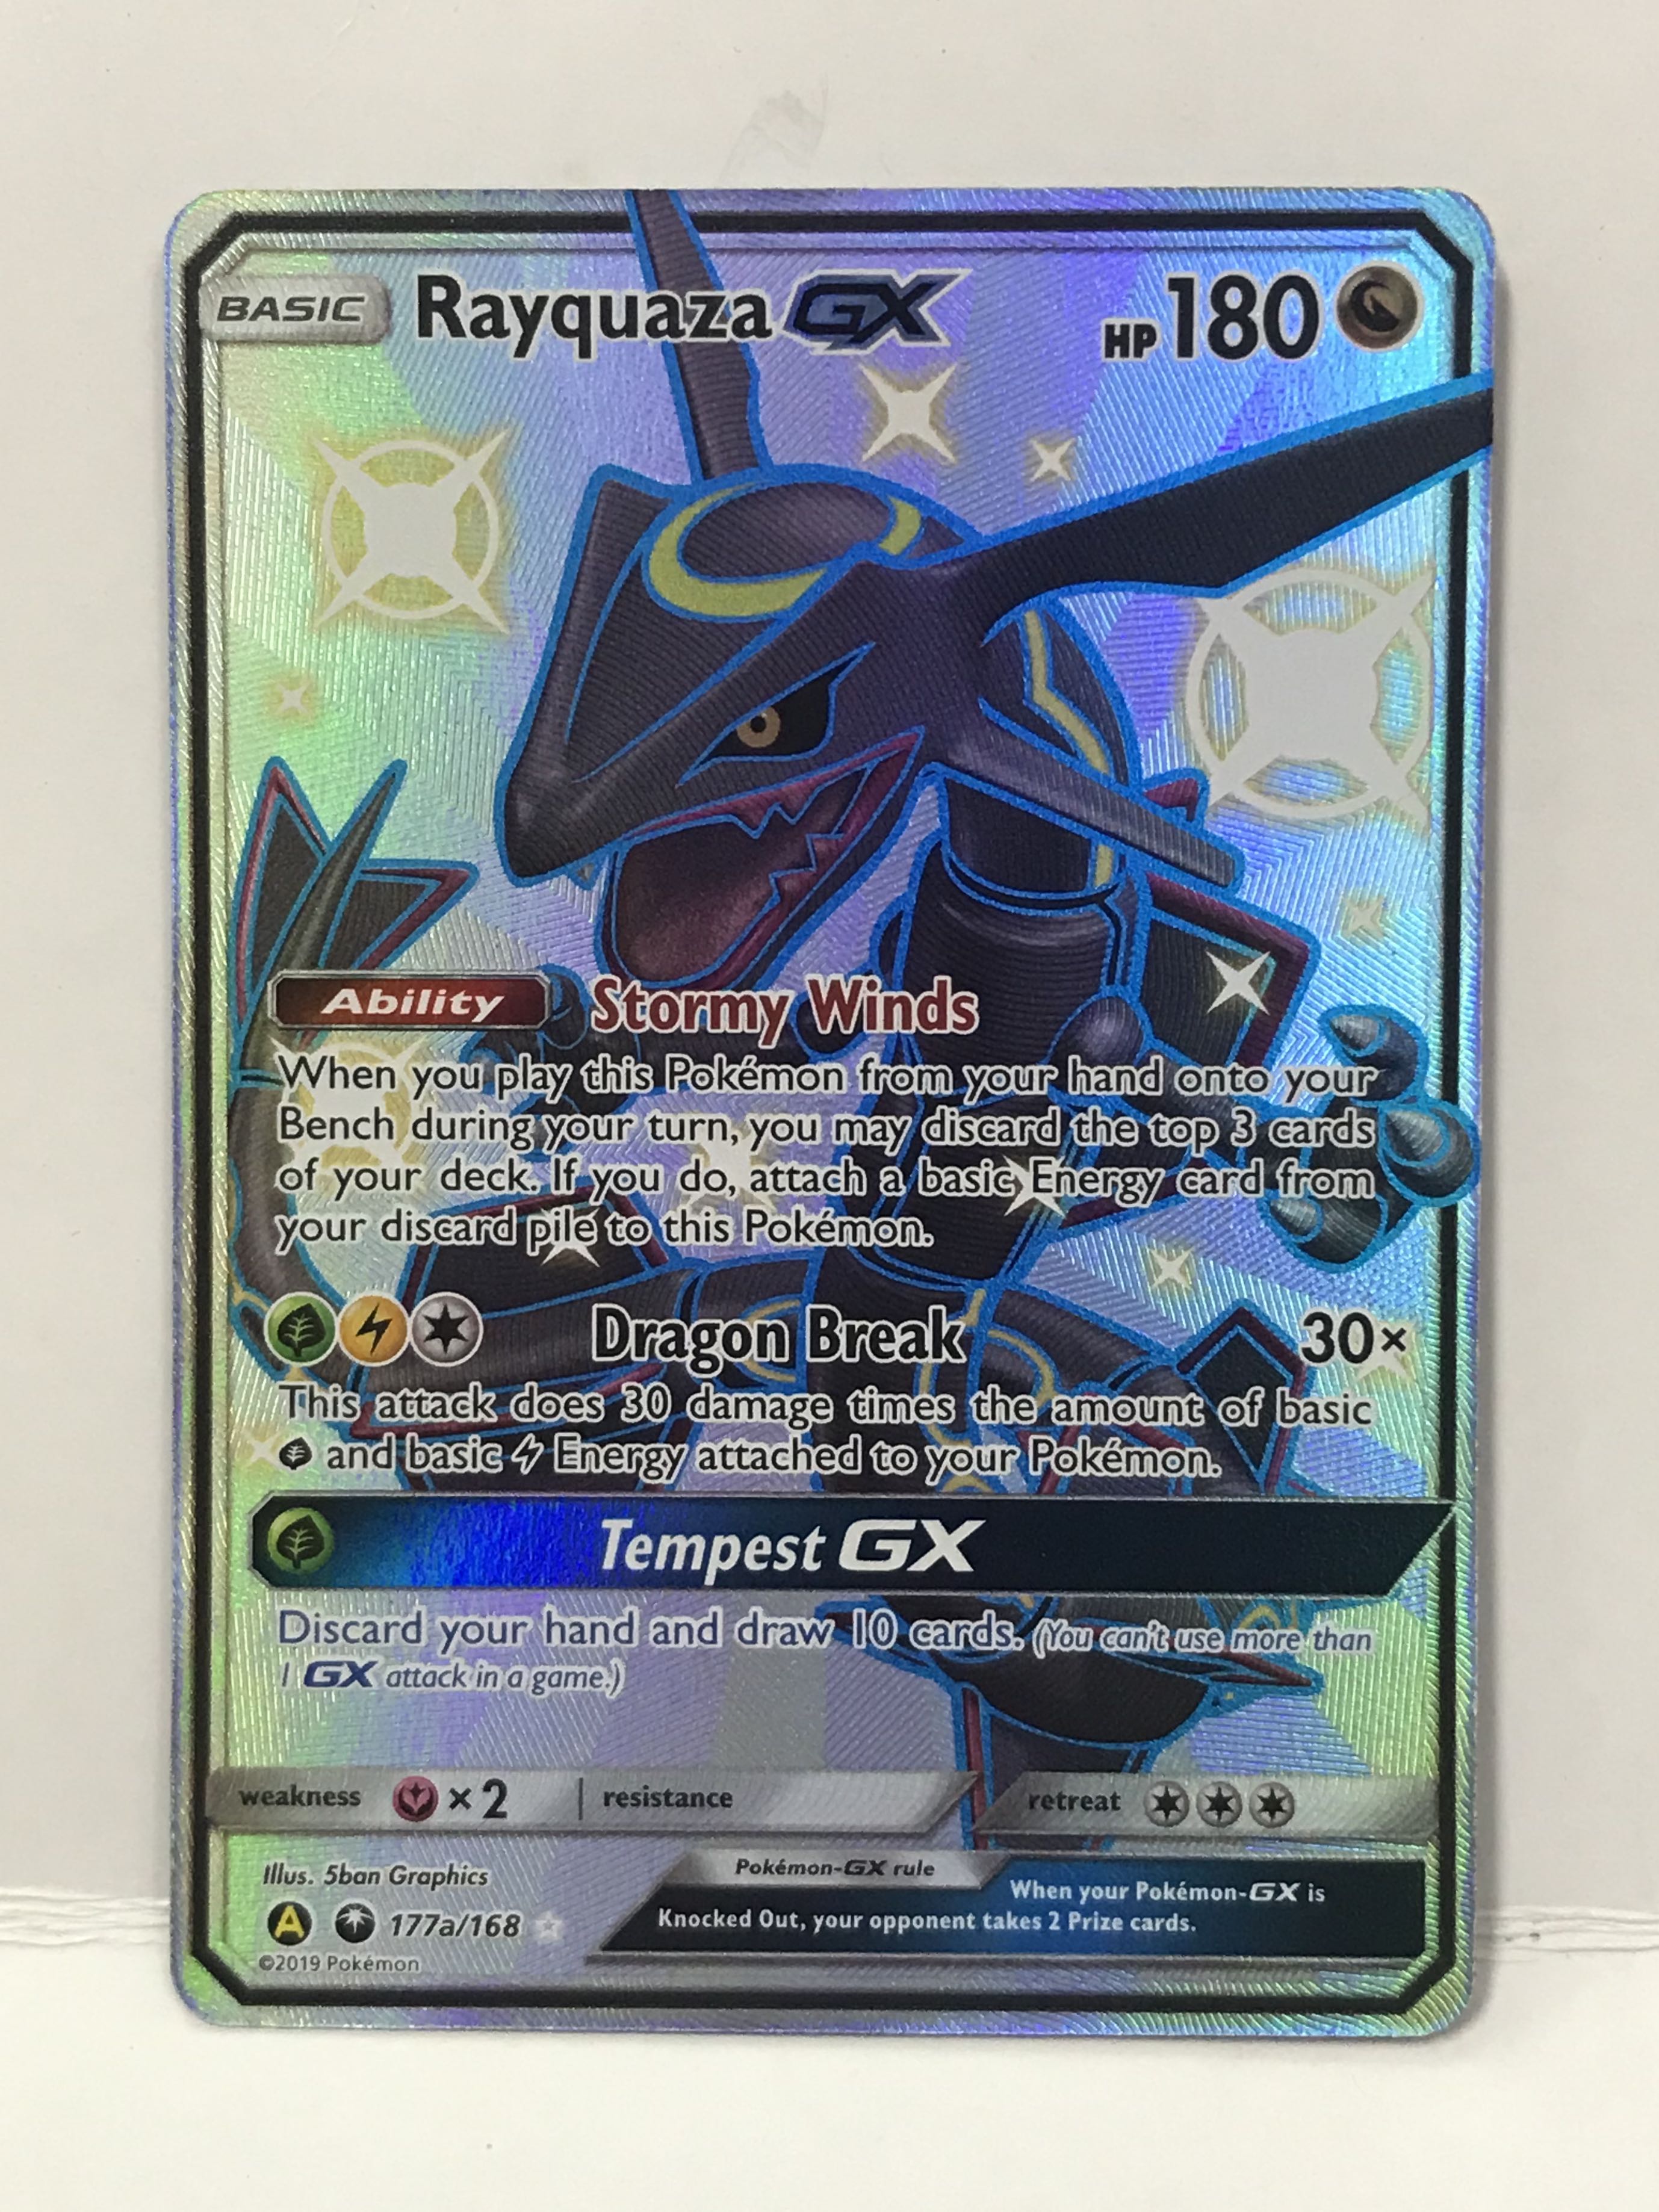 Rayquaza-GX (Shiny) - 177a/168